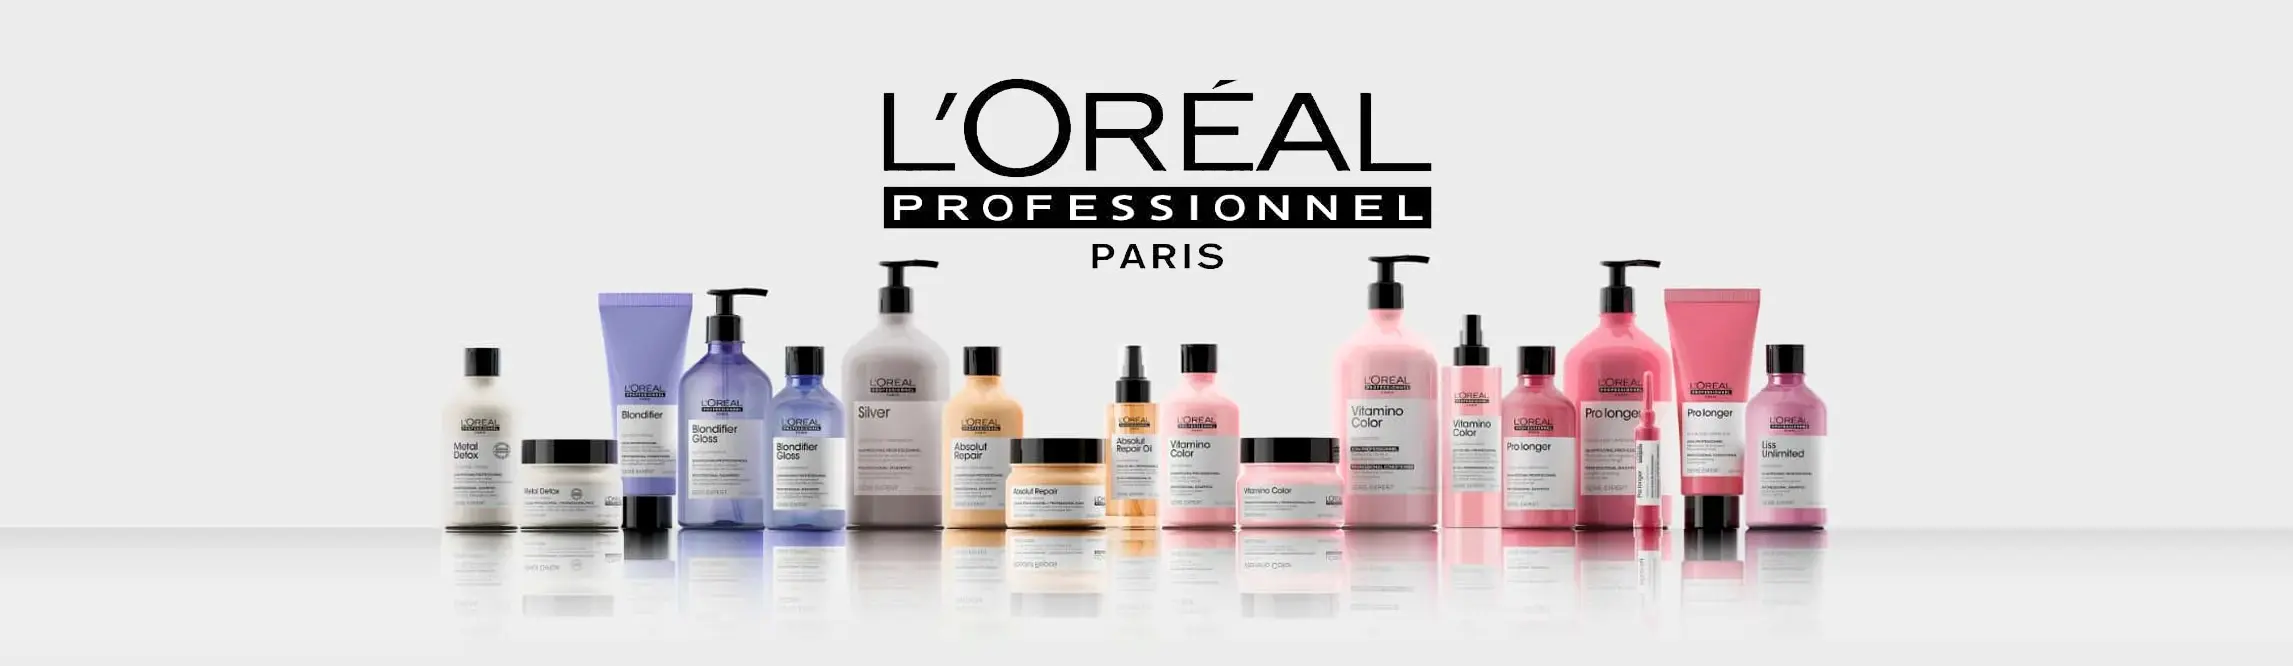 Productos L'Oréal Professionnel - Expertos en cuidado capilar profesional en perfumerias de la Uz